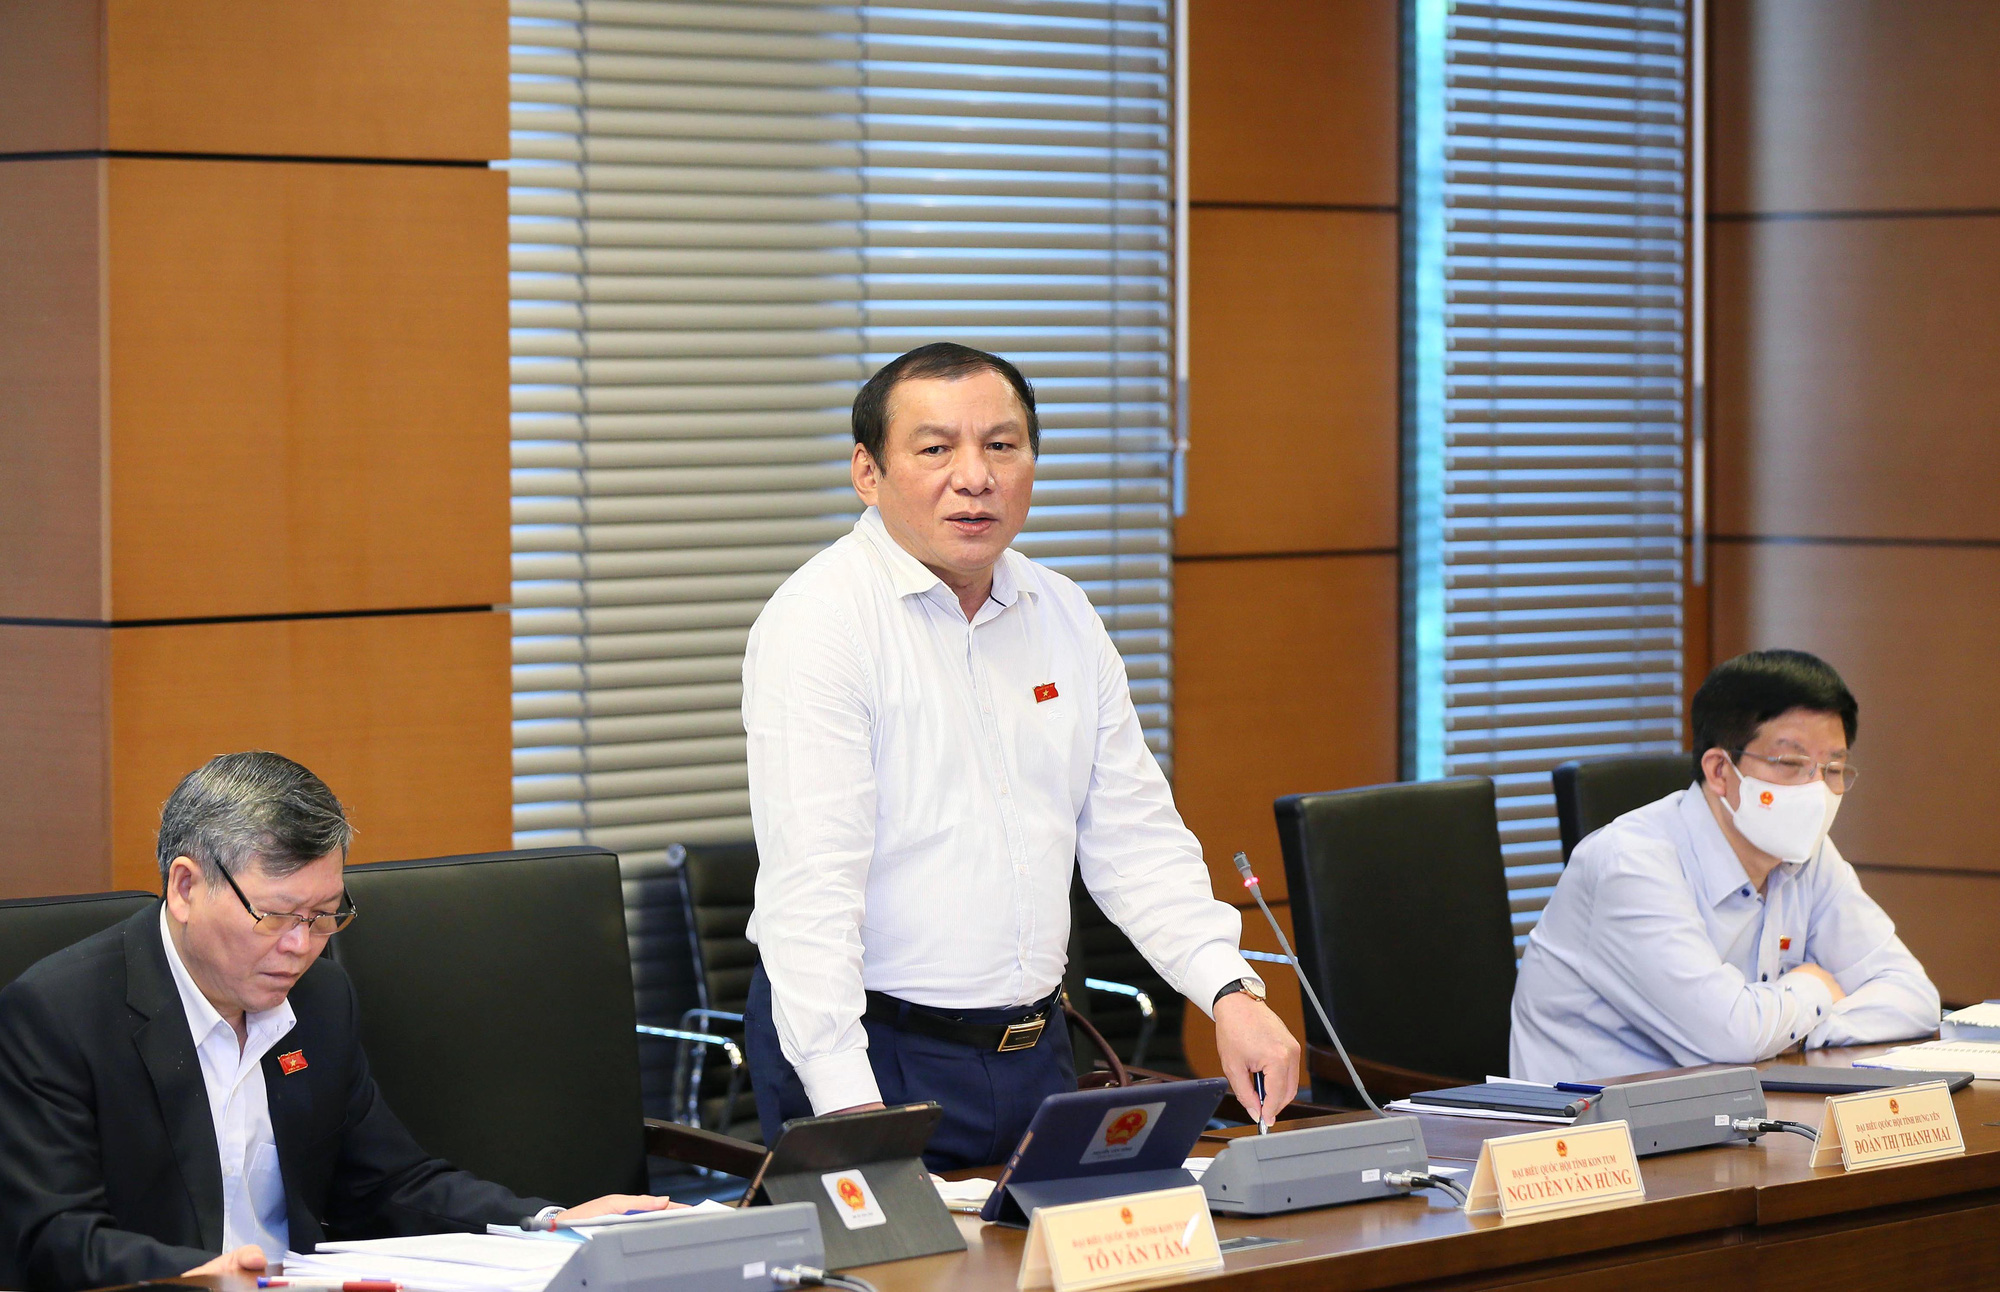 Bộ trưởng Nguyễn Văn Hùng: Có loại quỹ hình thành 6 năm nay mà vẫn không chi được, đó là một sự lãng phí - Ảnh 1.